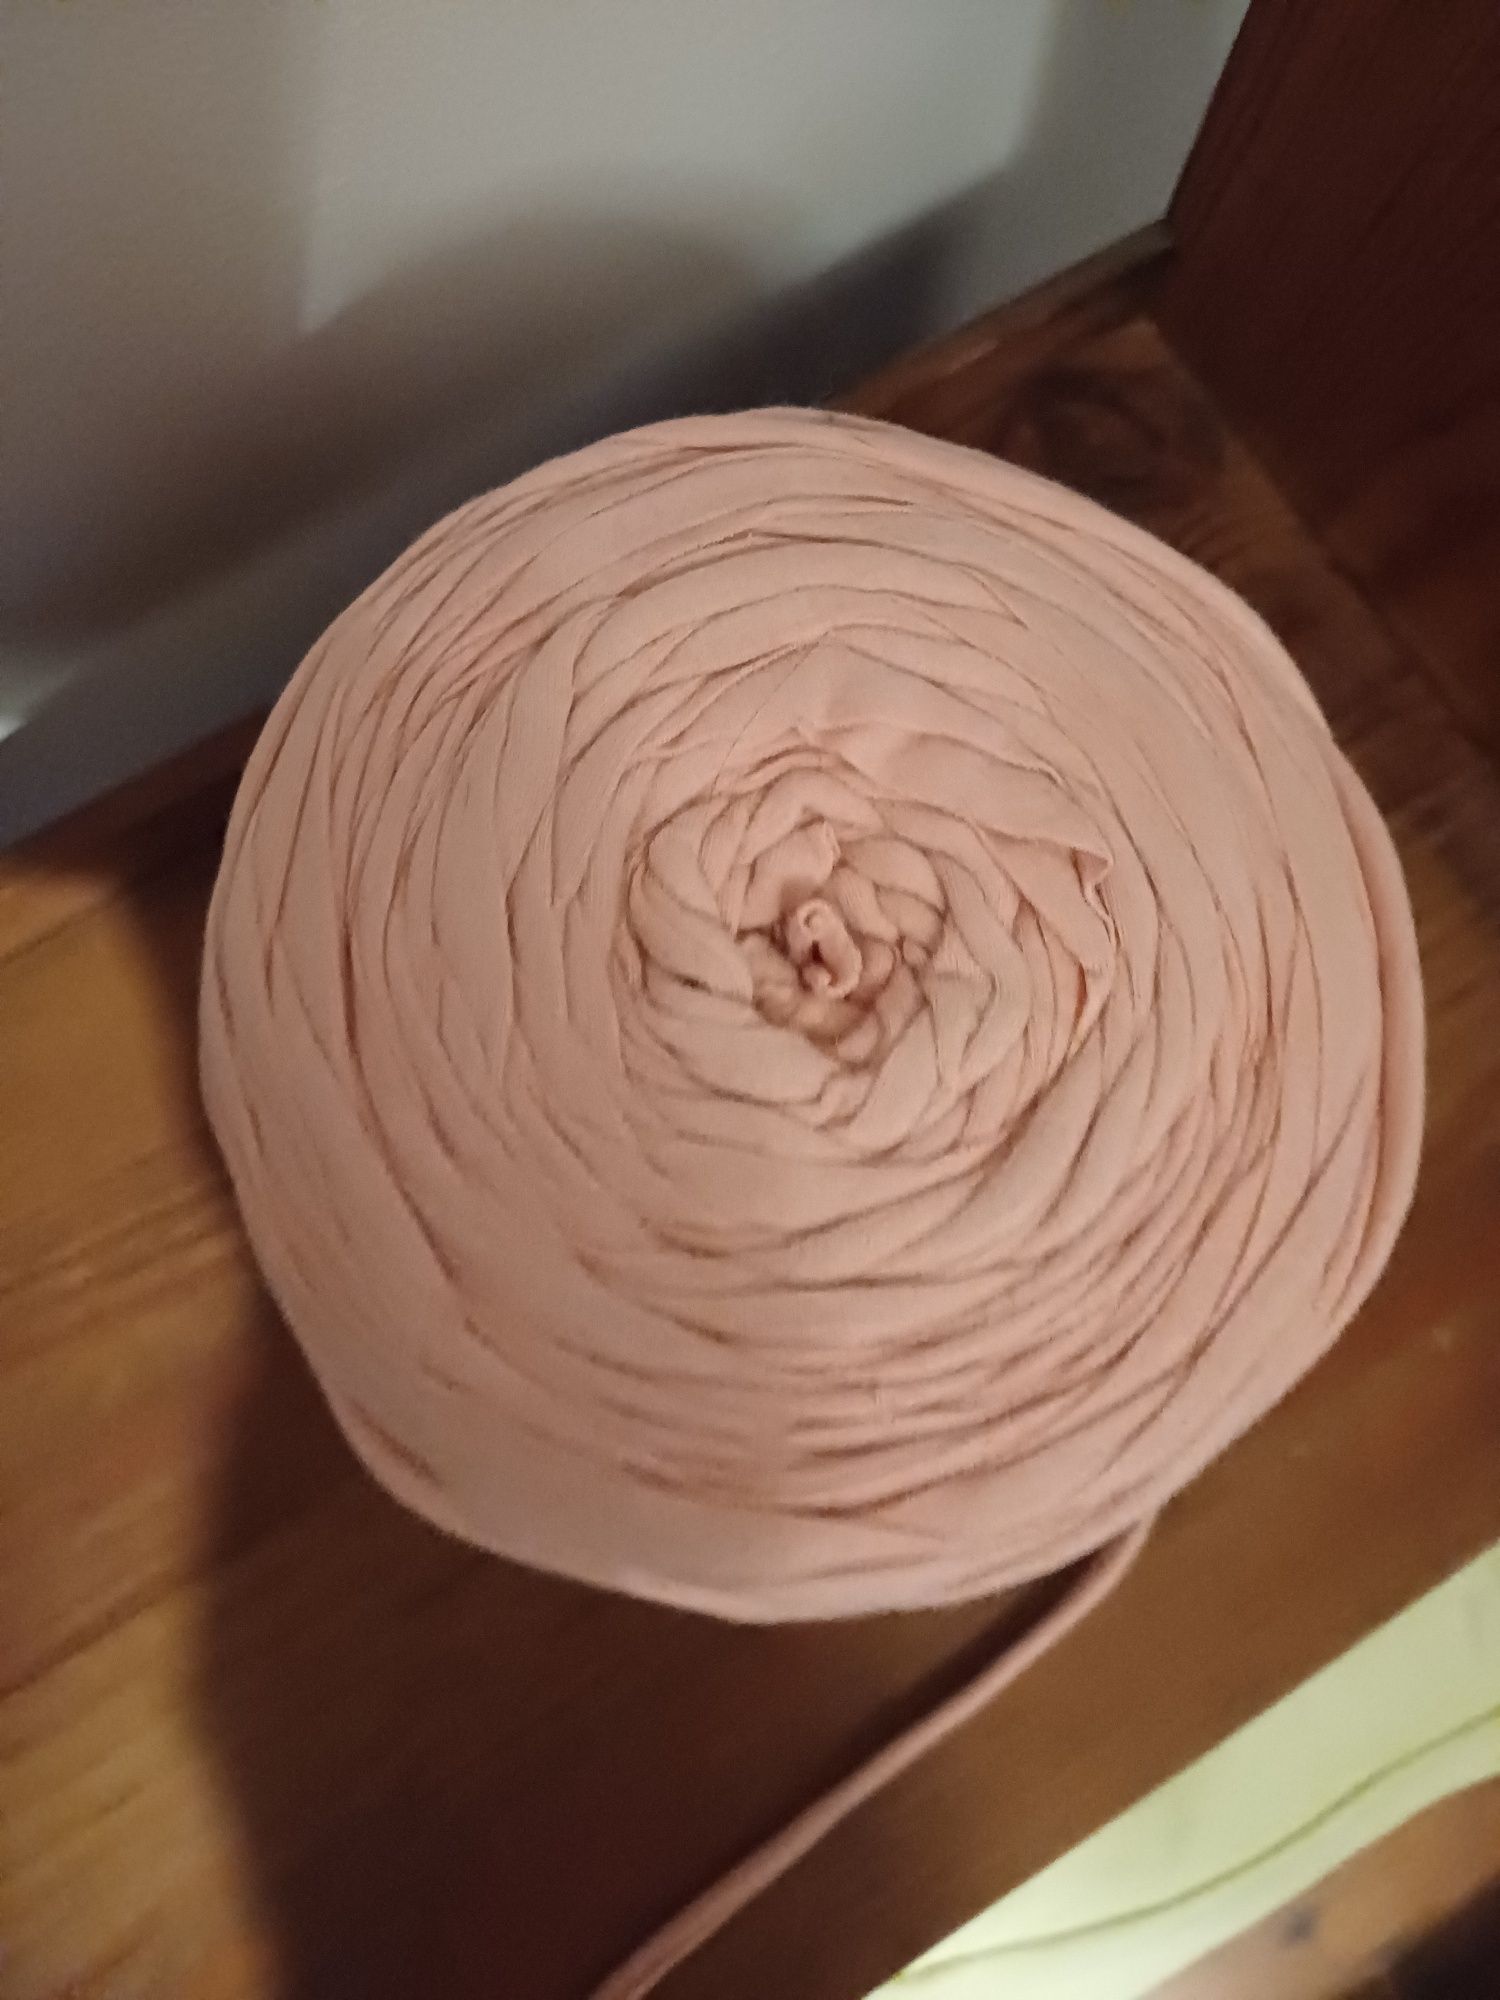 Motek bawełniany szeroką przędza t-shirt yarn róż natural spaghetti